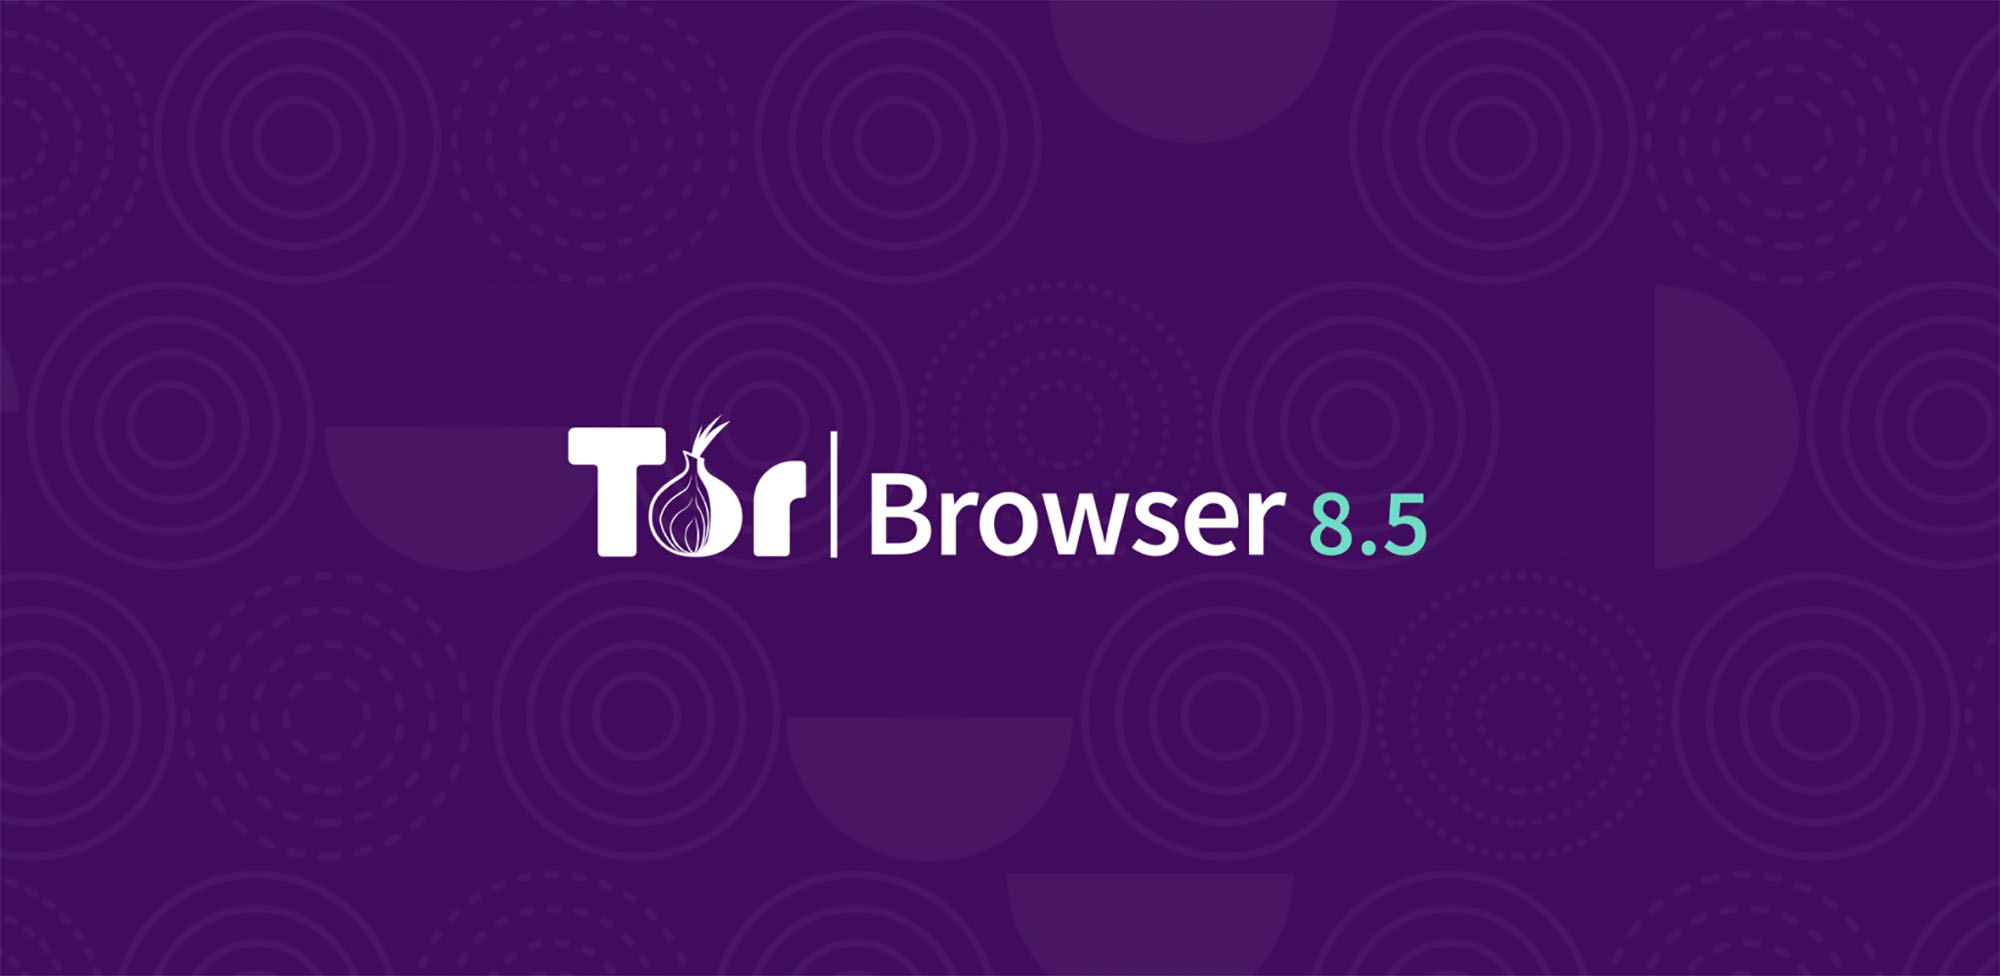 Tor browser 24 mega скачать бесплатно тор браузер для виндовс 10 mega